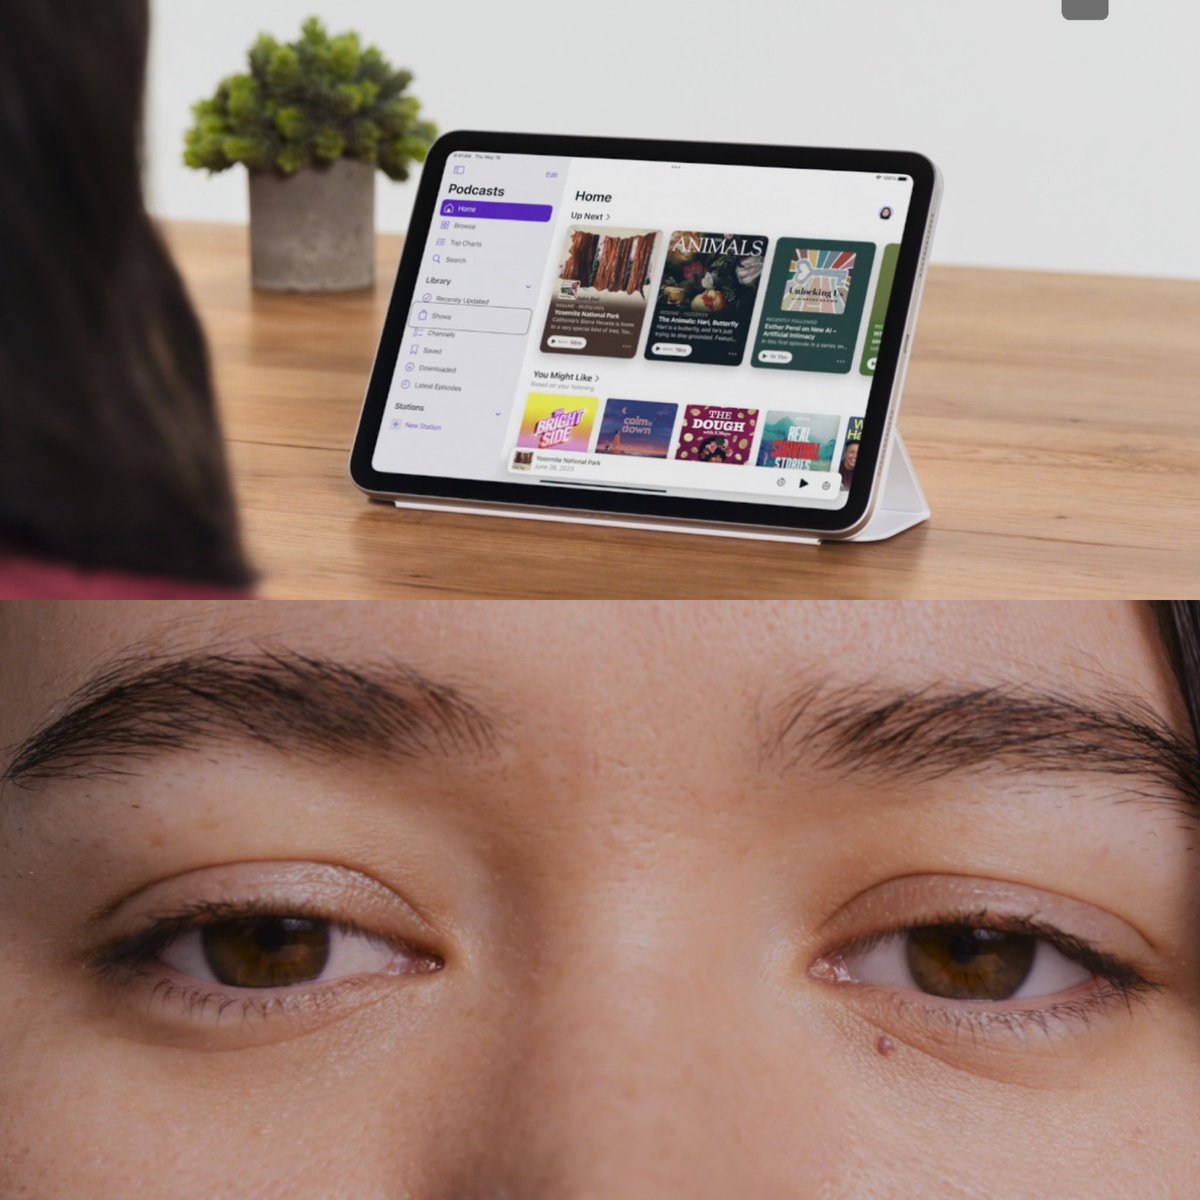 Esto es una tremenda locura, Apple ha anunciado hoy nuevas funciones de accesibilidad que llegarán a finales de este año, incluido el seguimiento ocular, una forma para que los usuarios con discapacidades físicas controlen el iPad o el iPhone con sus ojos.